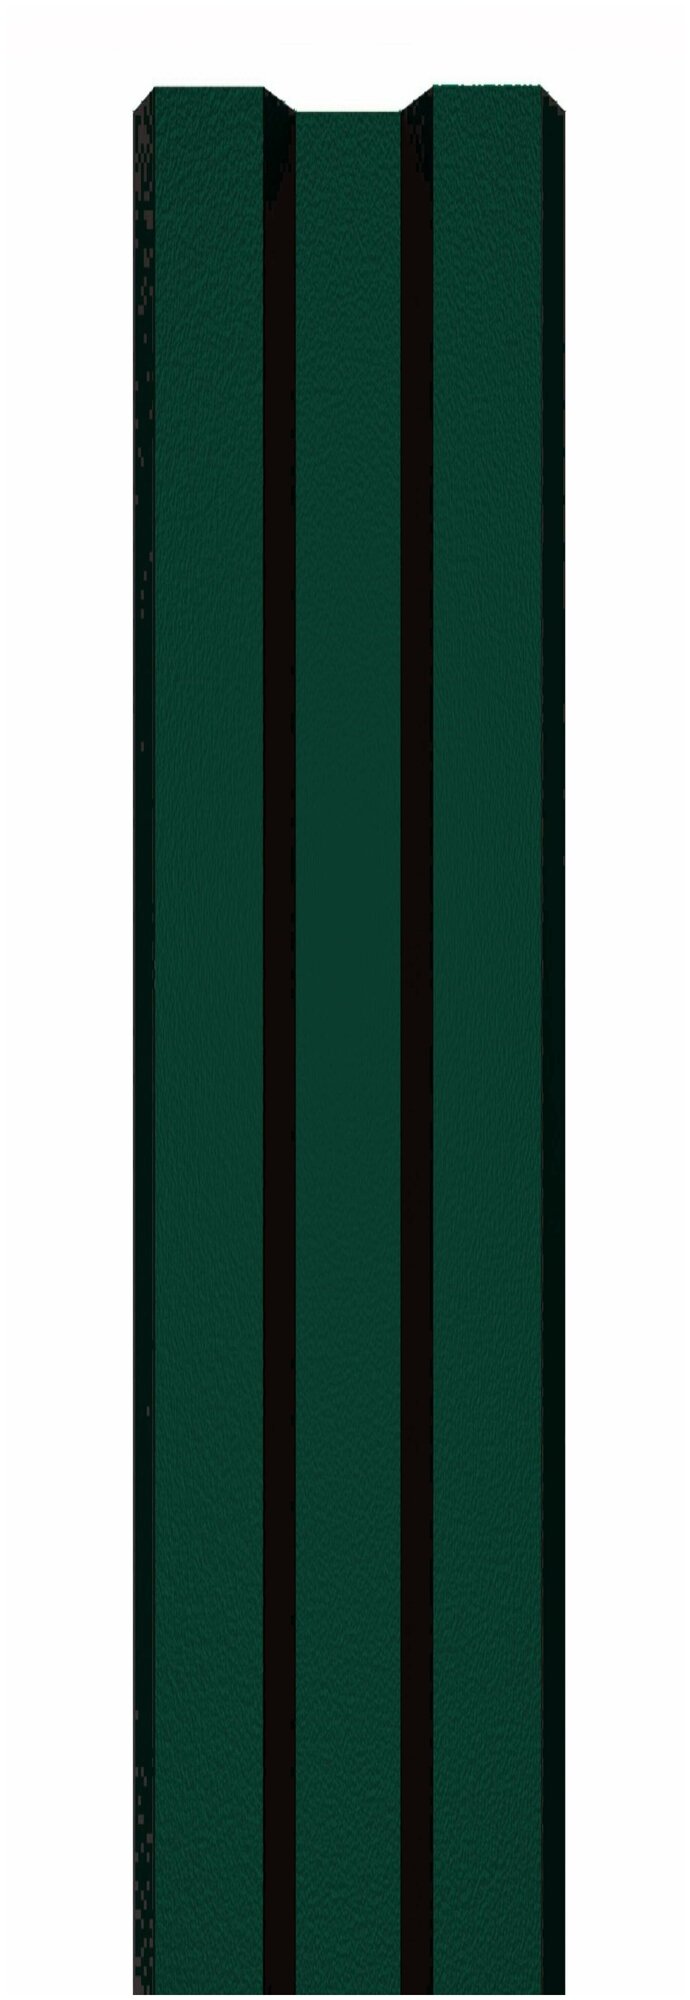 Оцинкованный с полимерным покрытием Высота 1.5 м Цвет: Зеленый мох 10 шт.+ саморезы в комплекте - фотография № 2